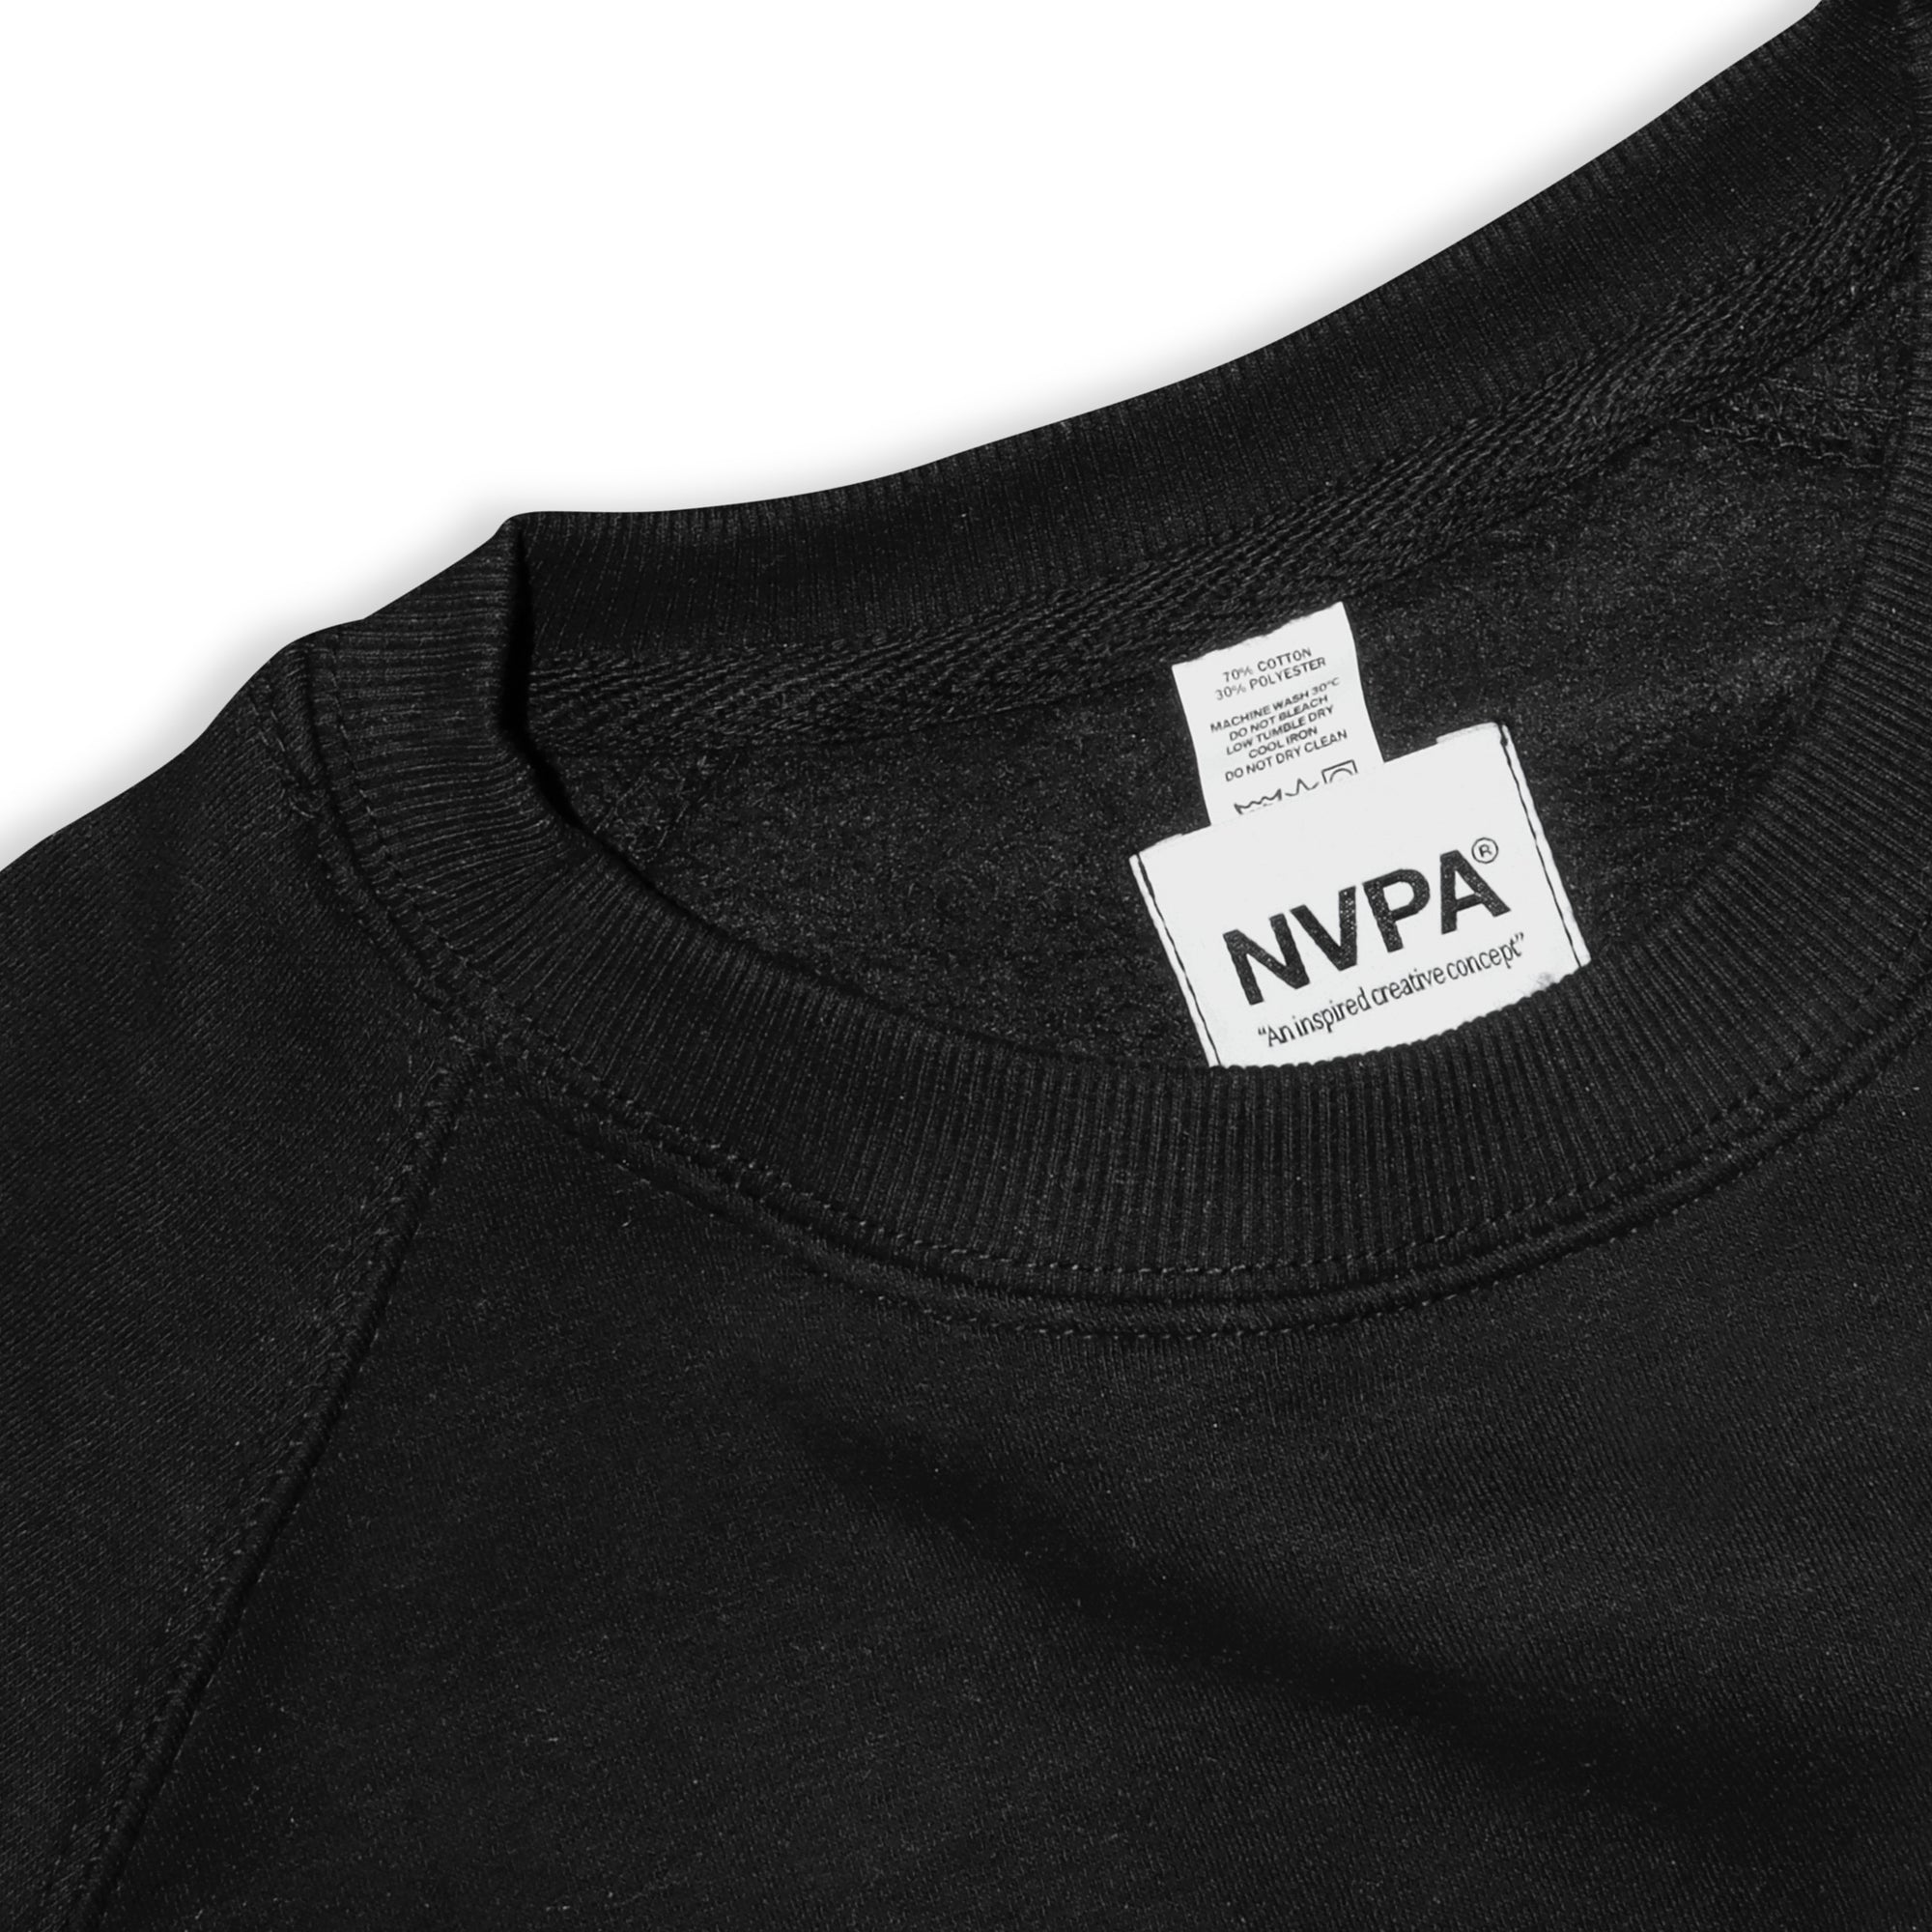 NVPA® black sweatshirt label detail